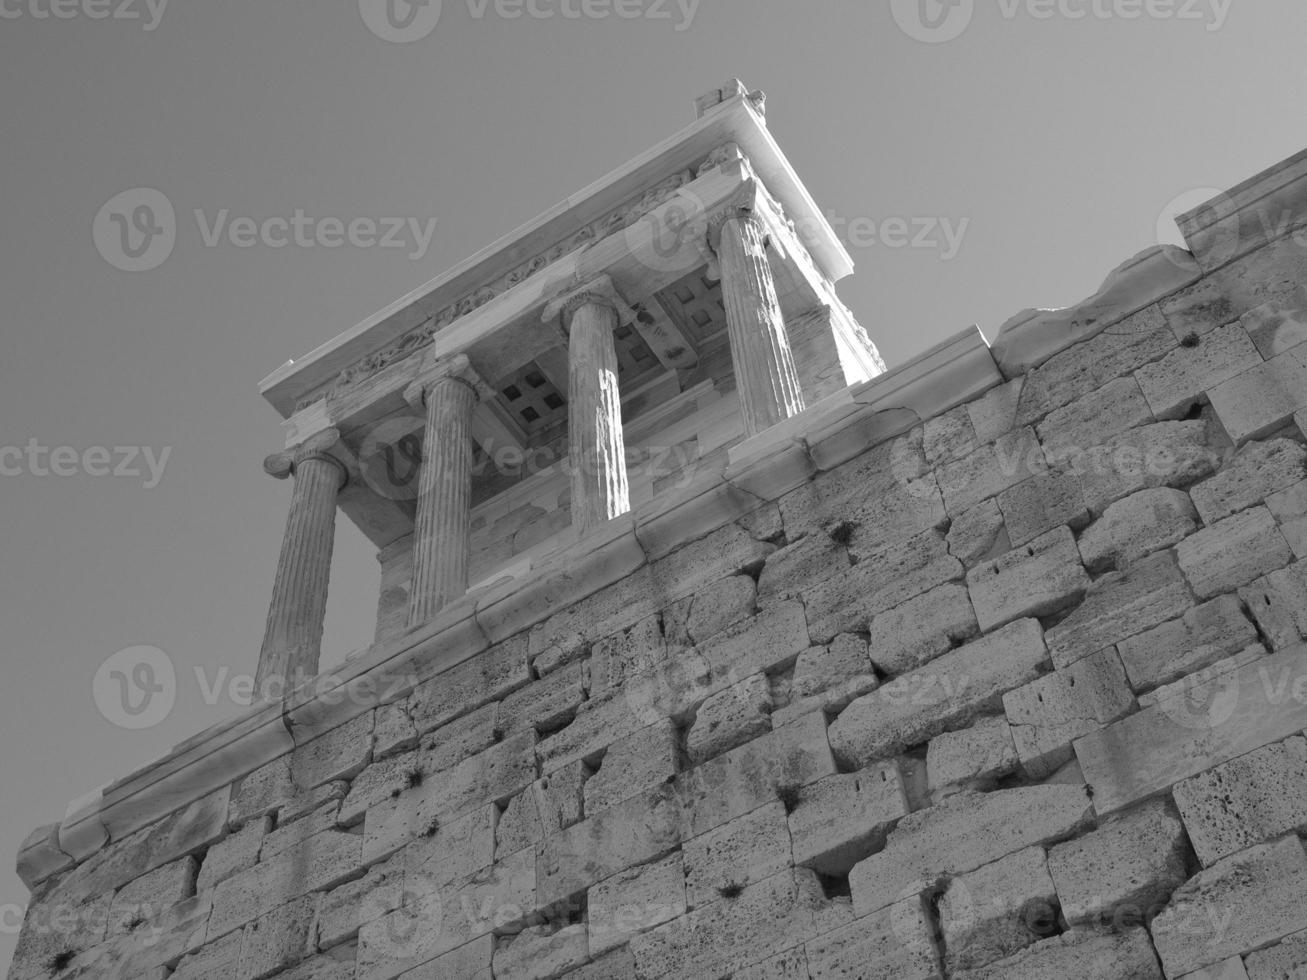 Atene nel Grecia foto